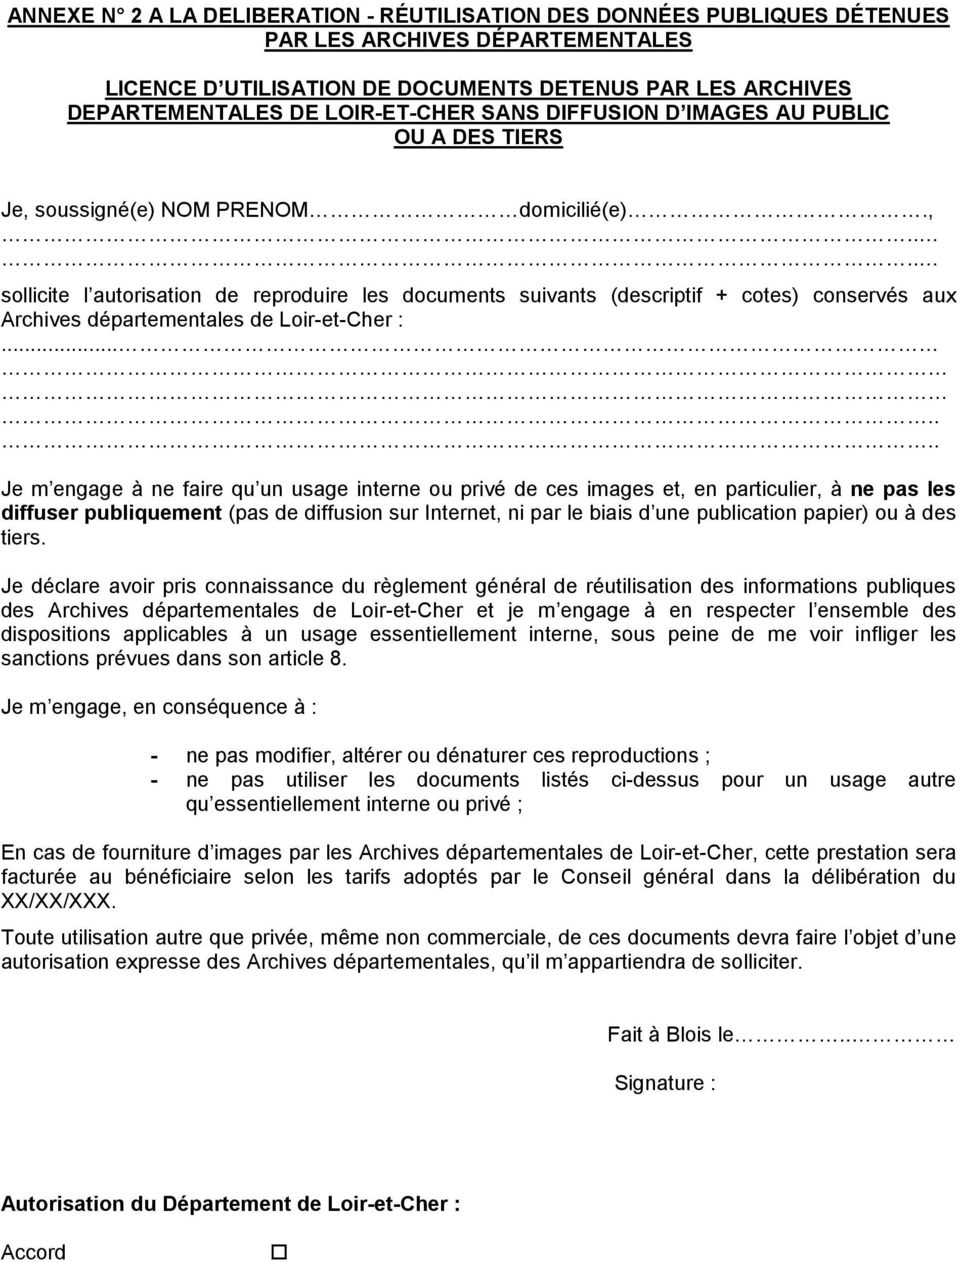 soussigné(e) NOM PRENOM domicilié(e).,.... sollicite l autorisation de reproduire les documents suivants (descriptif + cotes) conservés aux Archives départementales de Loir-et-Cher :.